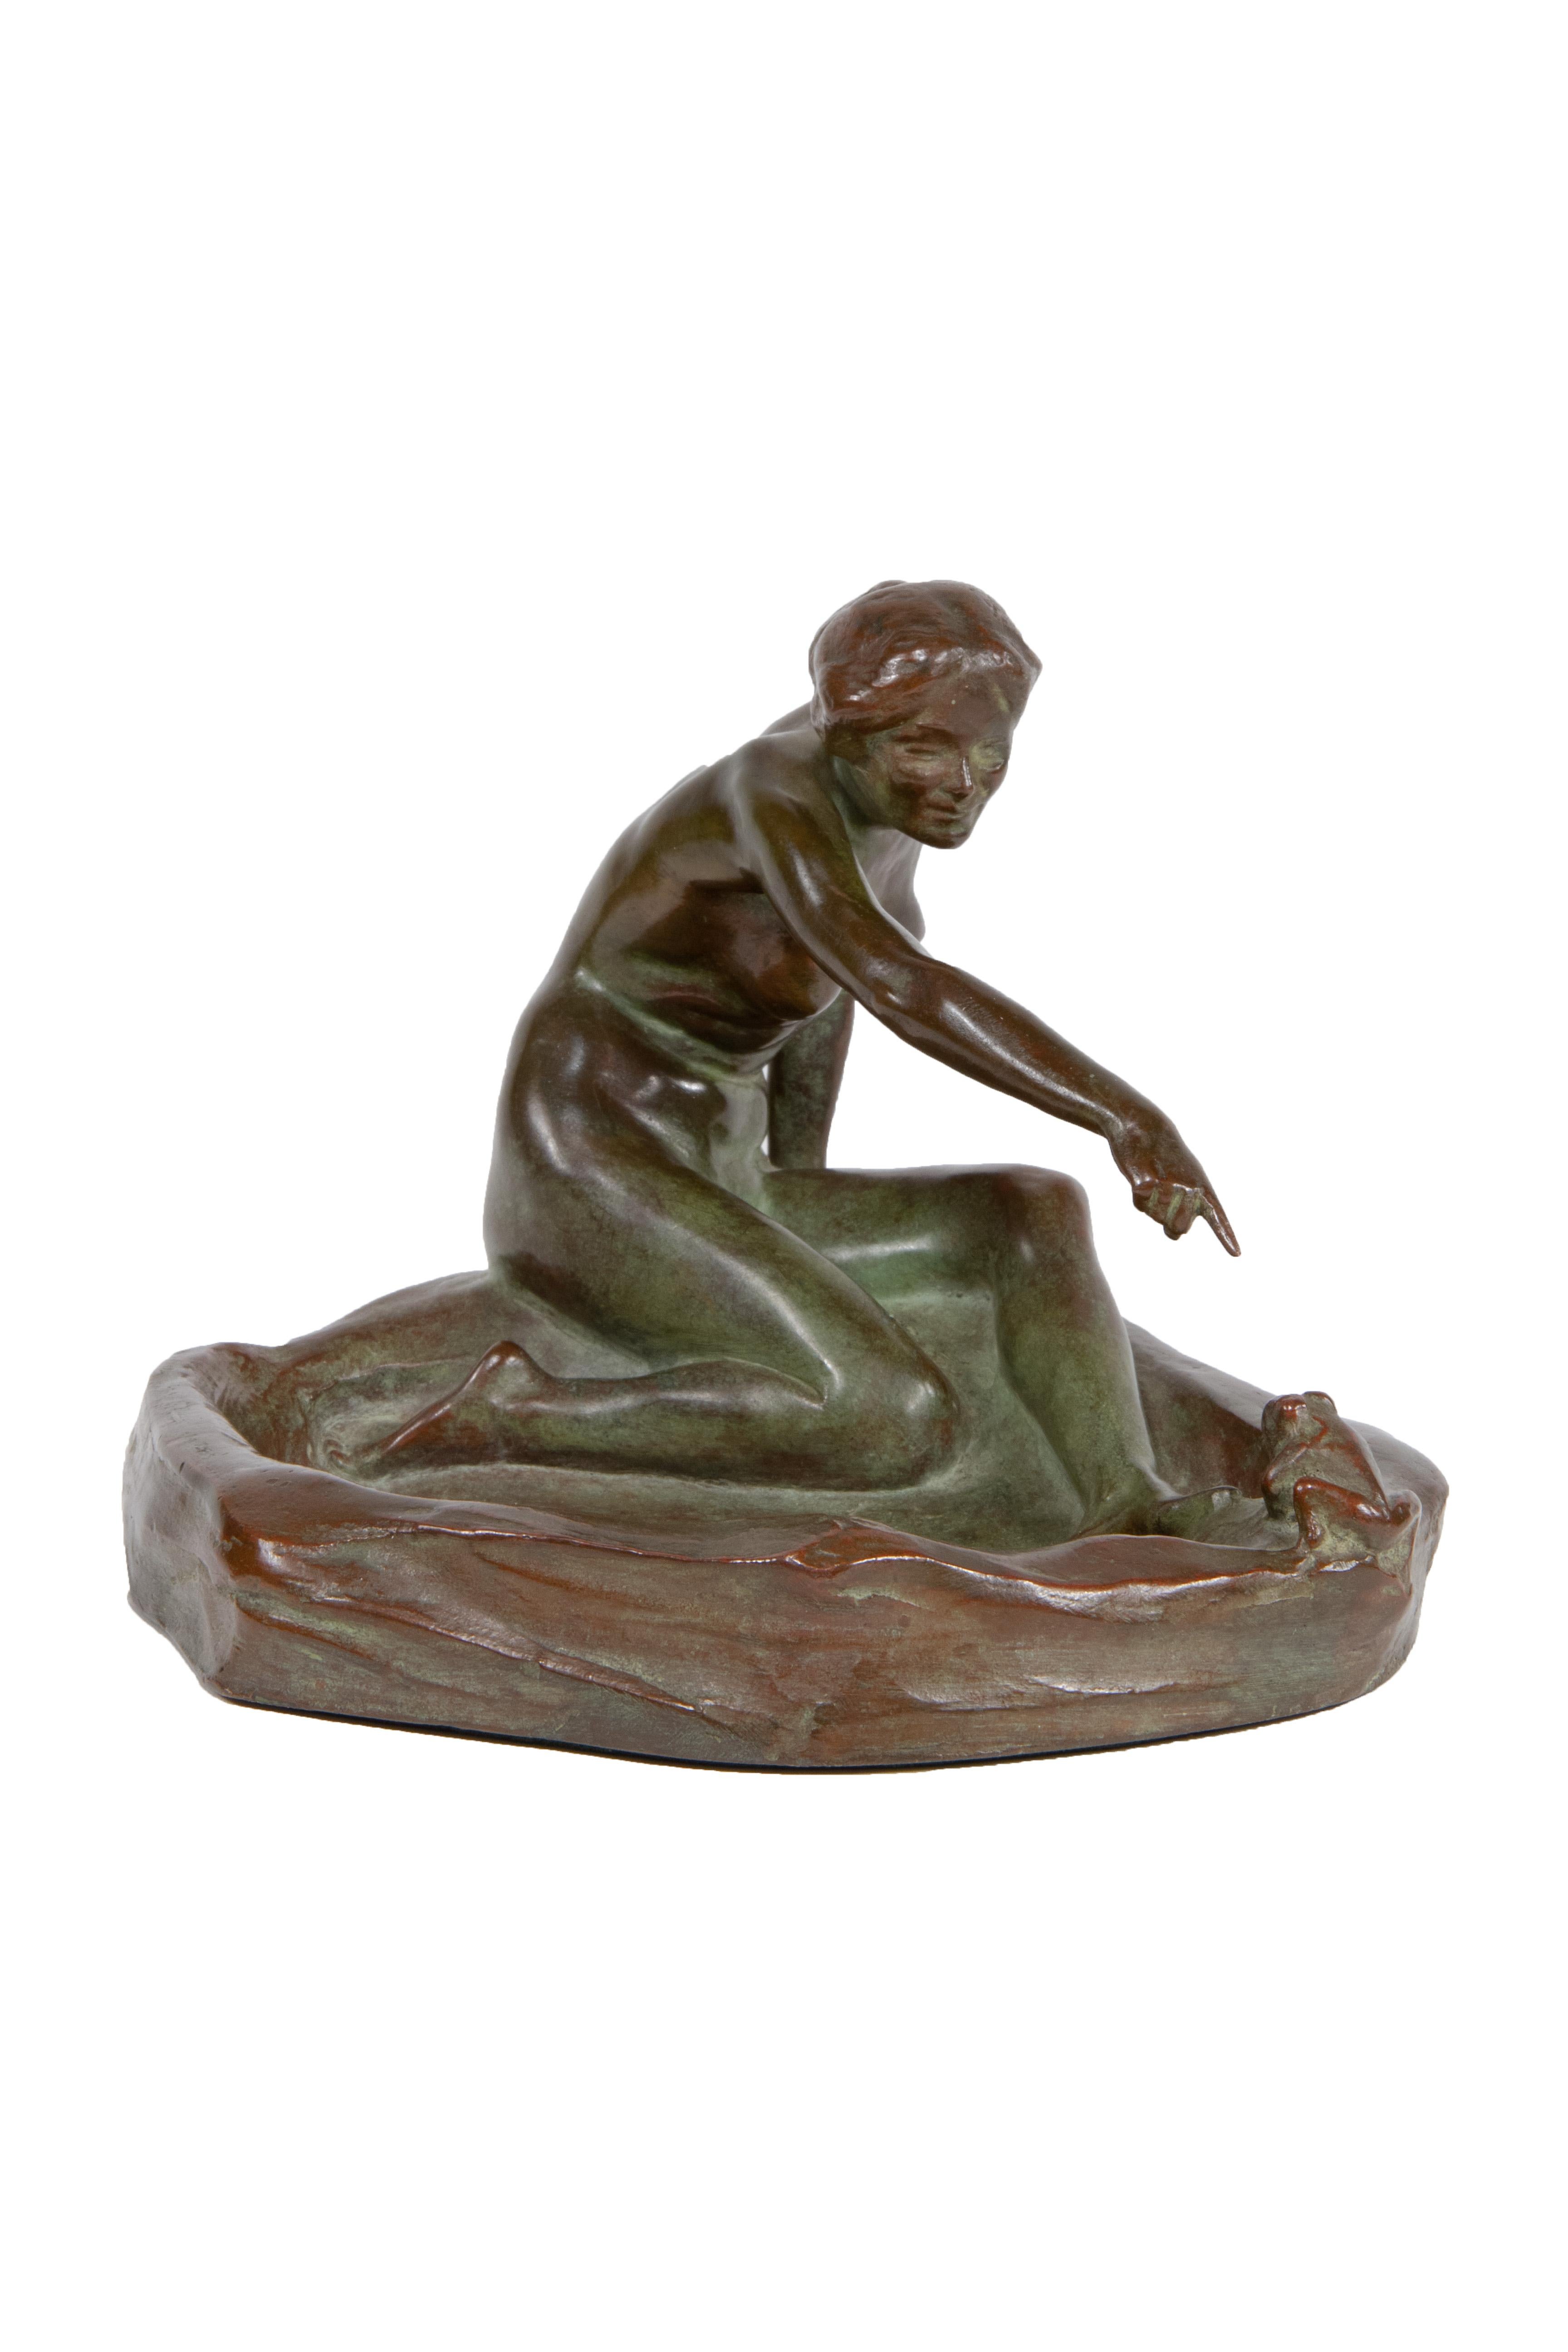 An American Art Nouveau patinated bronze vide de poche titled 